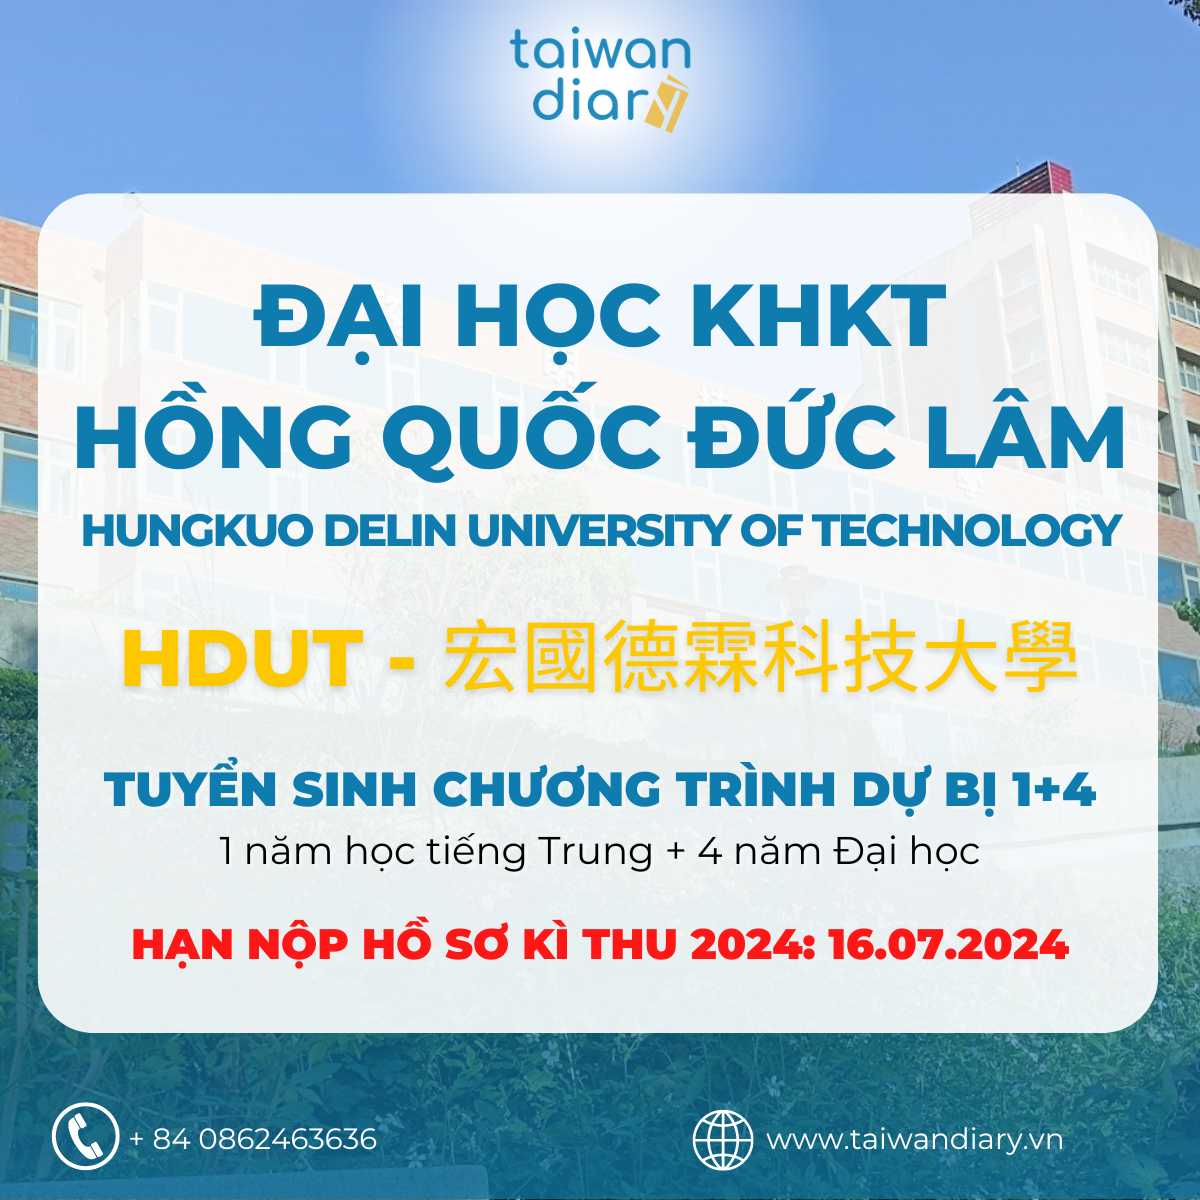 Giới thiệu hệ 1+4 Đại học KHKT Hồng Quốc Đức Lâm kỳ thu 2024